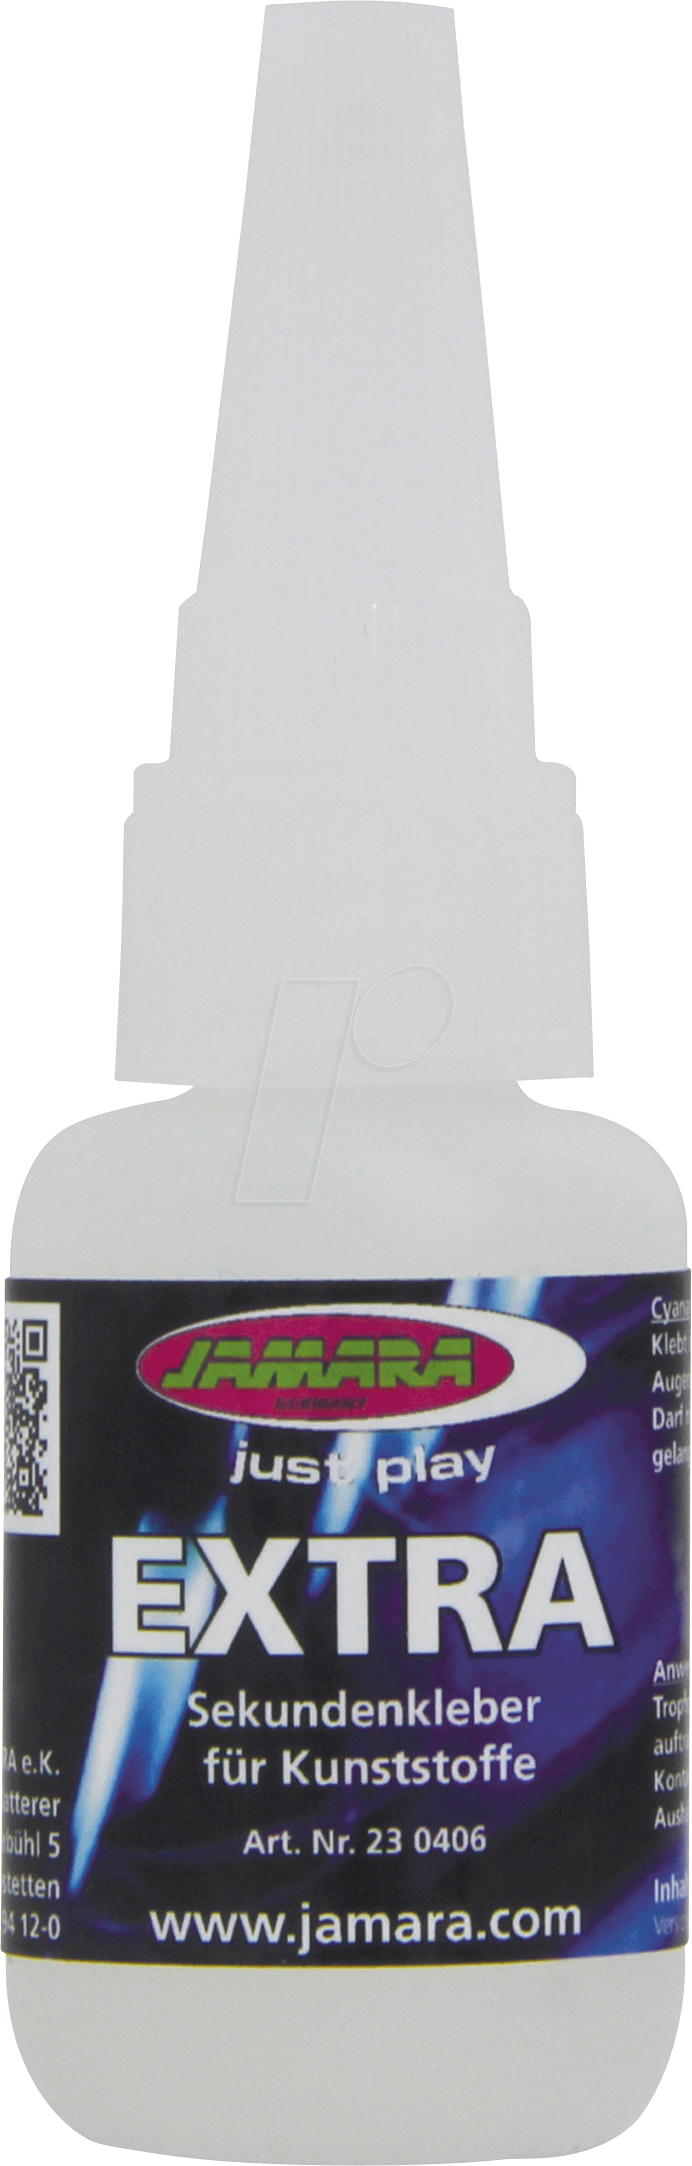 JAMARA 230406 - Sekundenkleber EXTRA für Kunststoffe 20g von Jamara